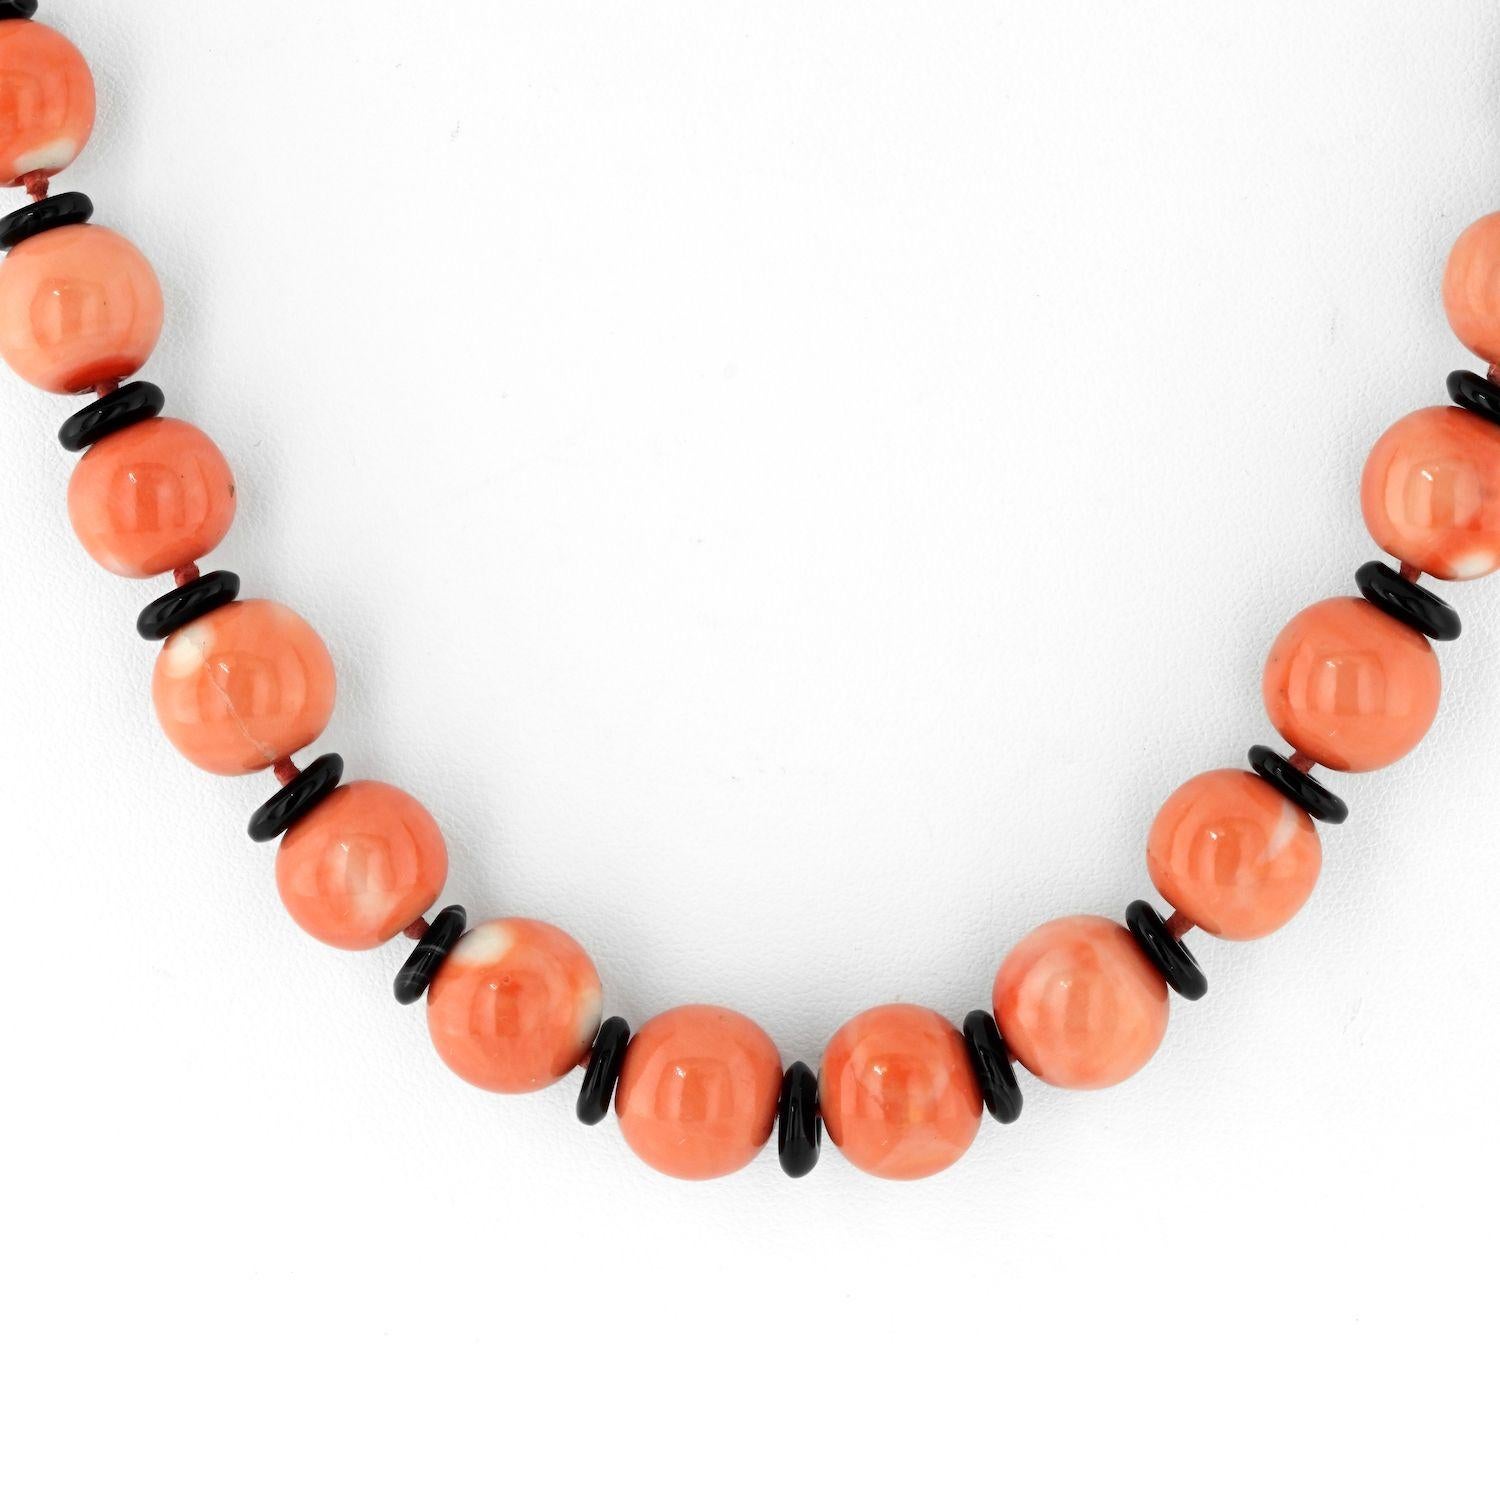 Tauchen Sie ein in die lebendige Welt der 1970er Jahre mit dieser atemberaubenden Bvlgari Perlenkette in leuchtenden Bonbonfarben, die ein Beweis für die Meisterschaft der Marke in Design und Handwerkskunst ist. Diese mit viel Liebe zum Detail